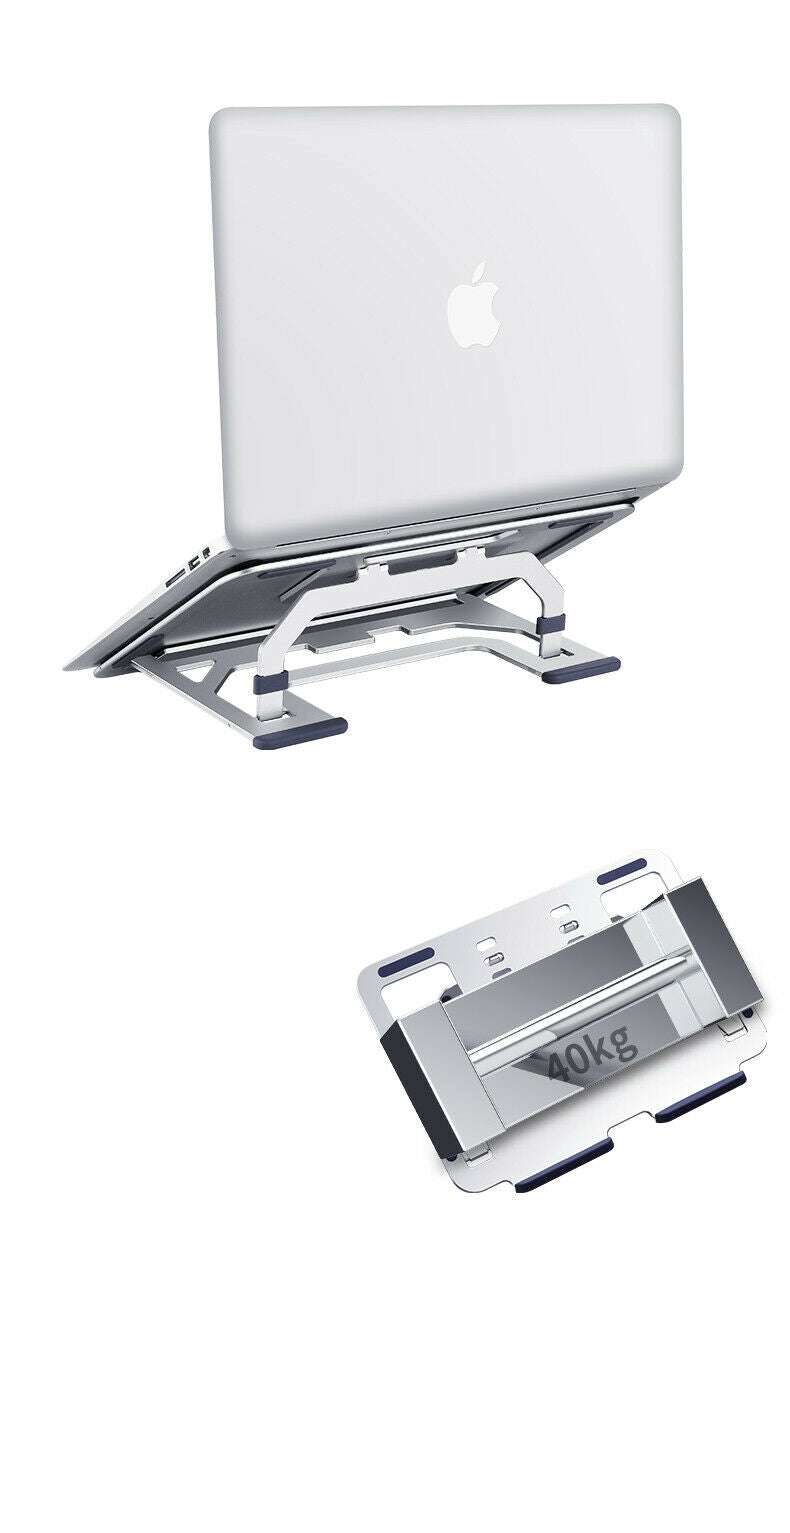 Universal Adjustable Desktop Stand Holder Mount For iPad Tablet New